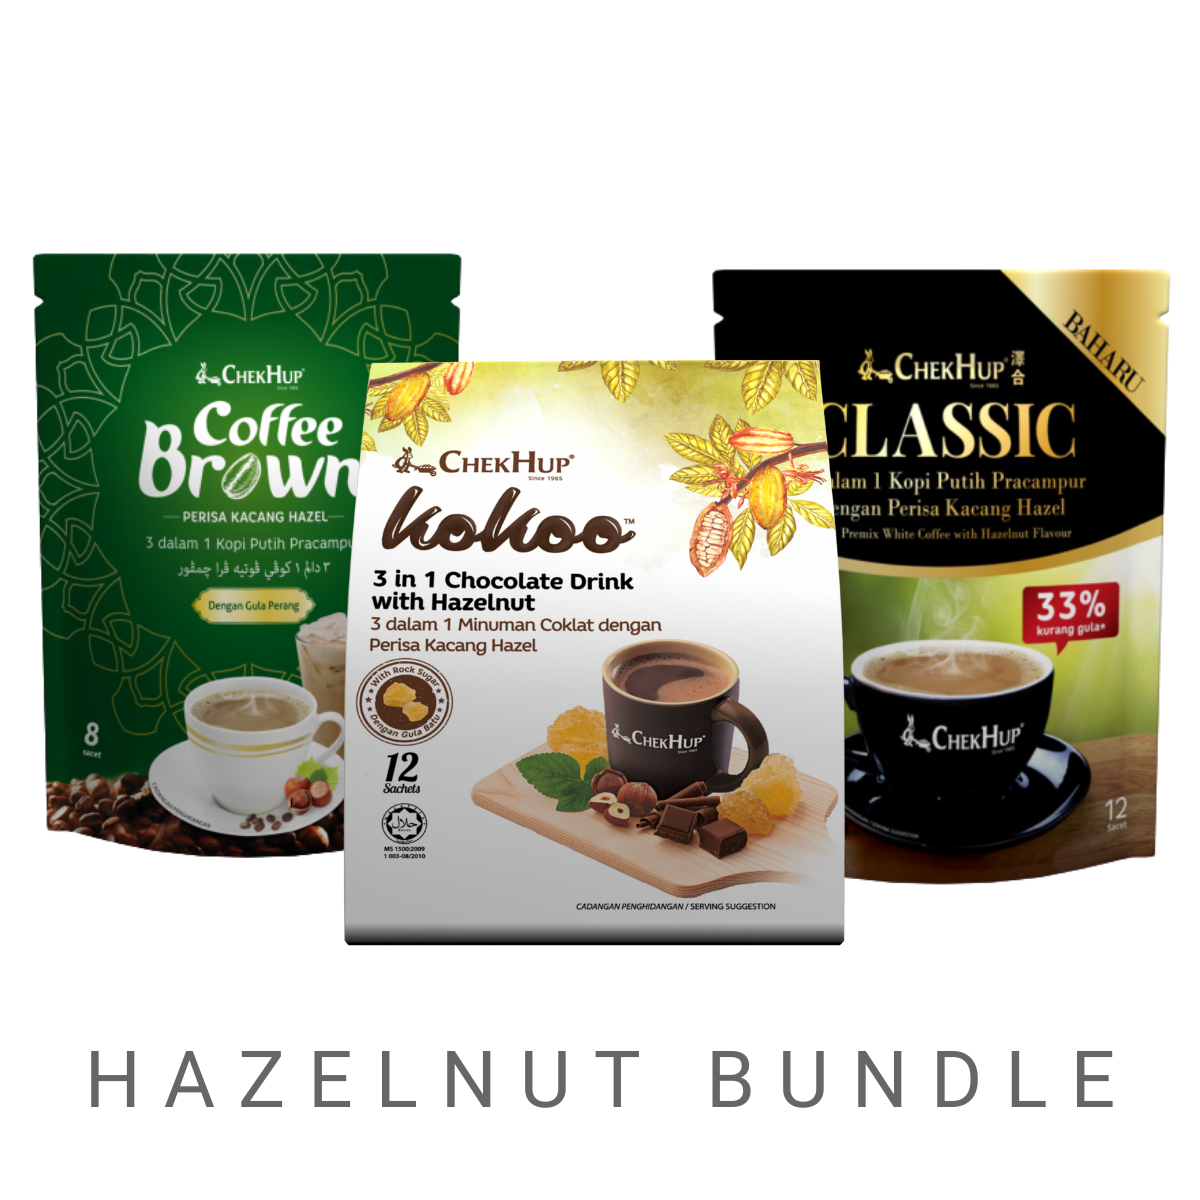 Chek Hup Hazelnut Bundle (Classic with Hazelnut, Coffee Brown with Hazelnut, Kokoo with Hazelnut)